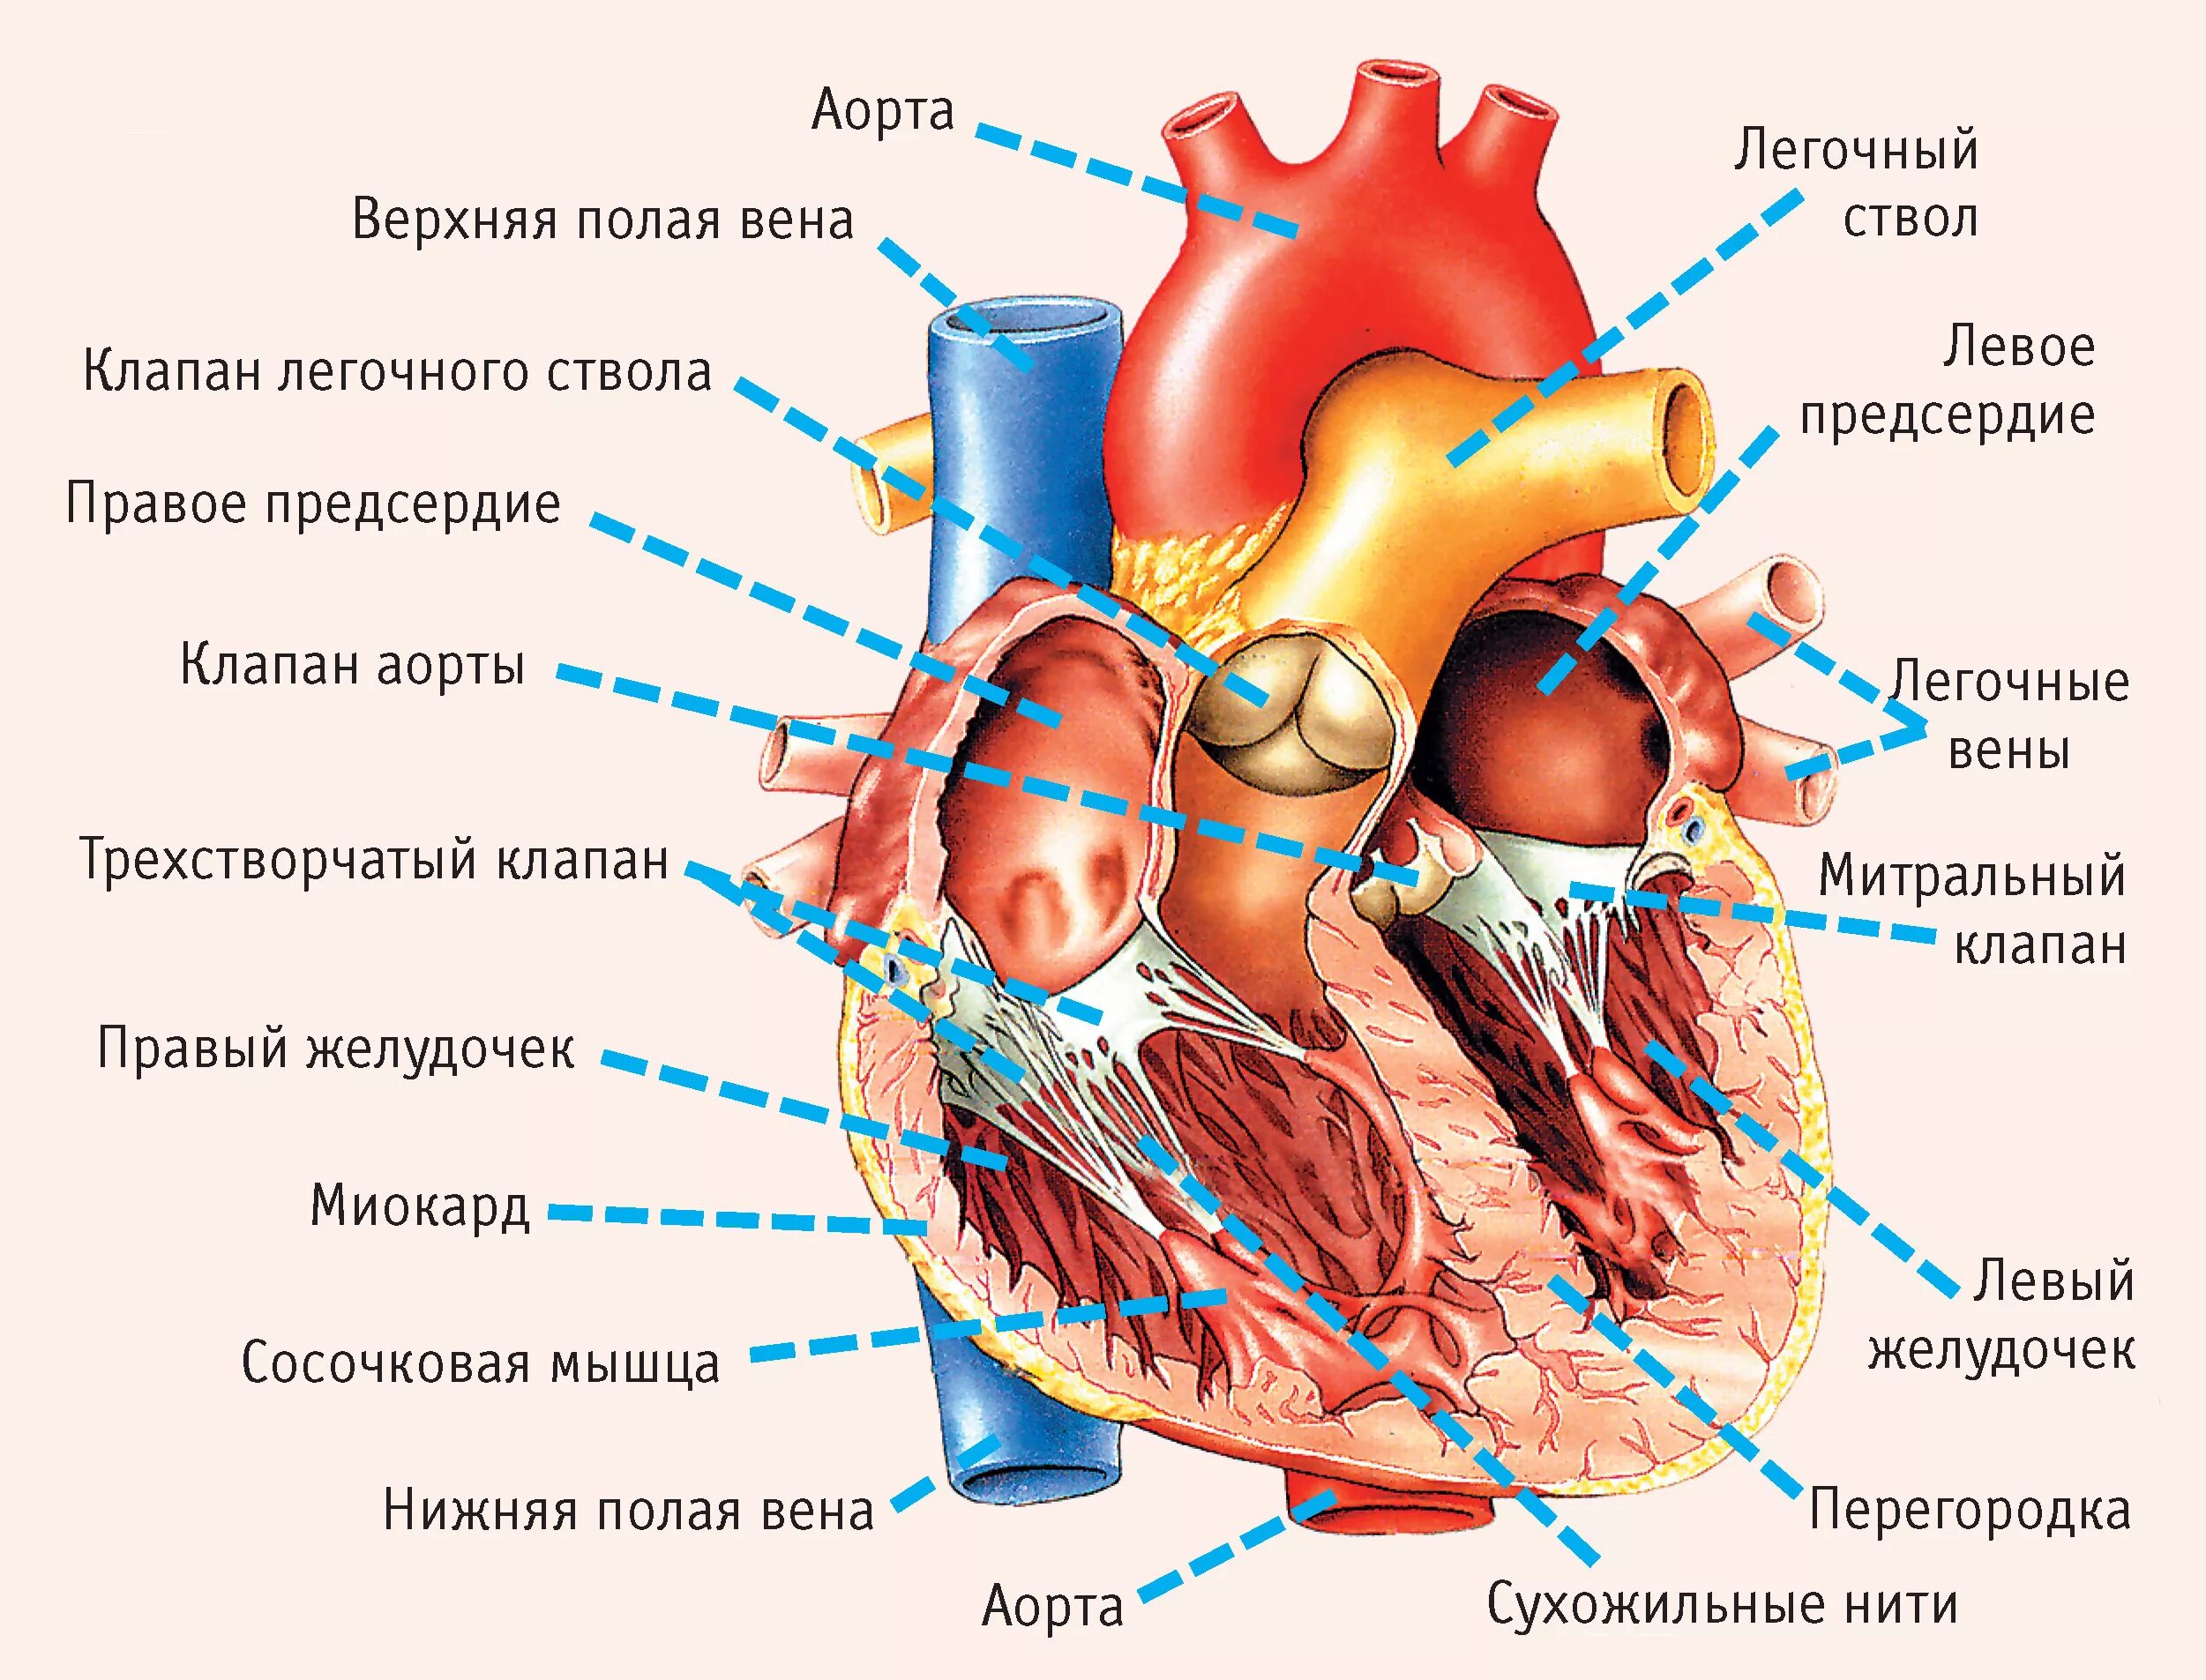 Название крови в правой части сердца. Строение человеческого сердца. Строение сердца человека биология. Строение сердца анатомия человека с подписями. Строение сердца в разрезе.